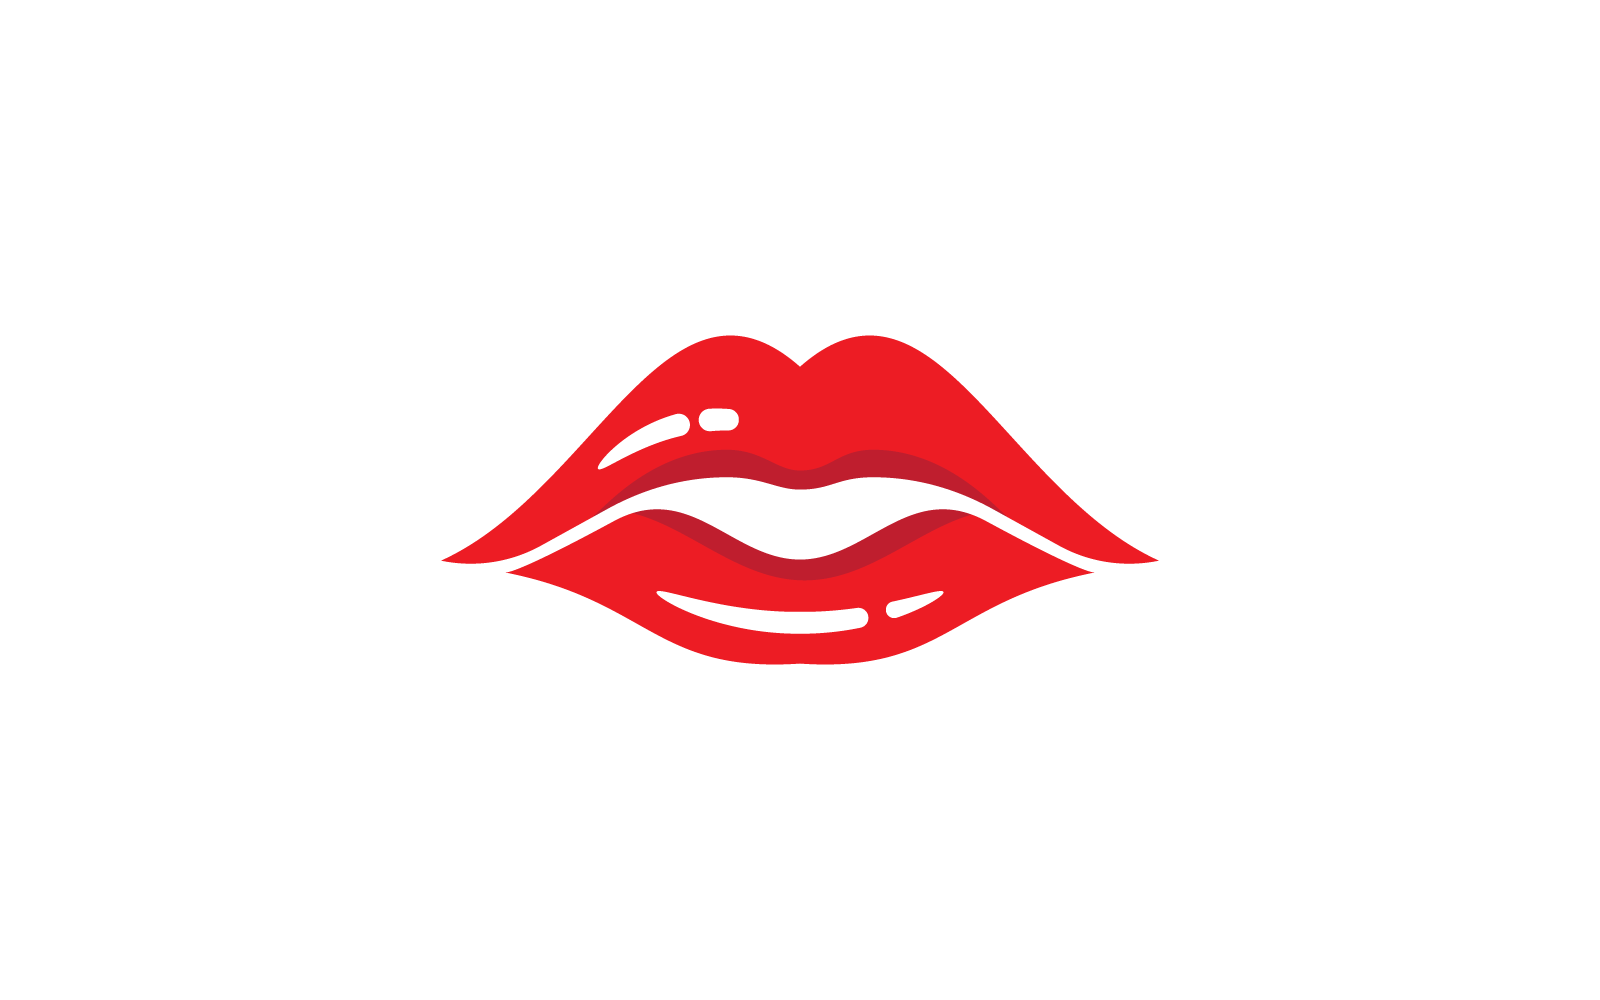 Beauty lips women logo illustration template